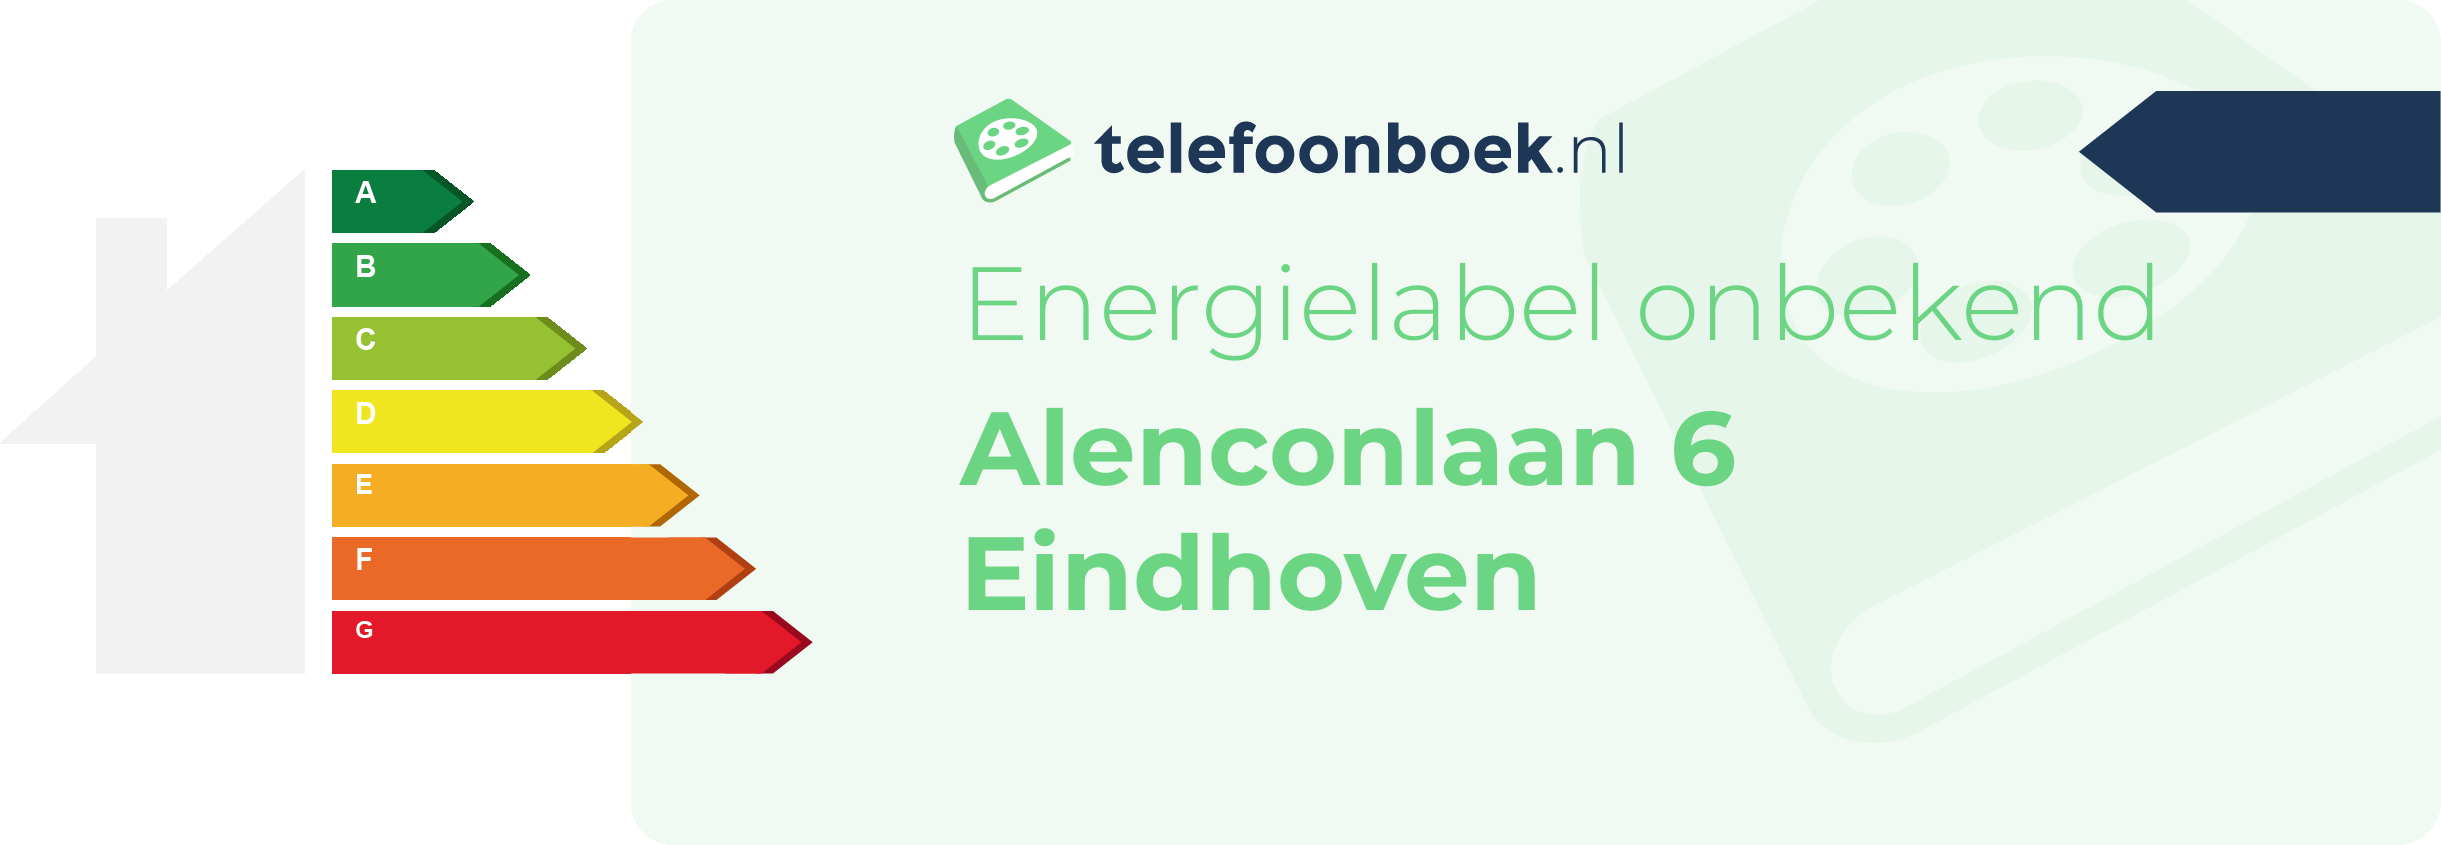 Energielabel Alenconlaan 6 Eindhoven